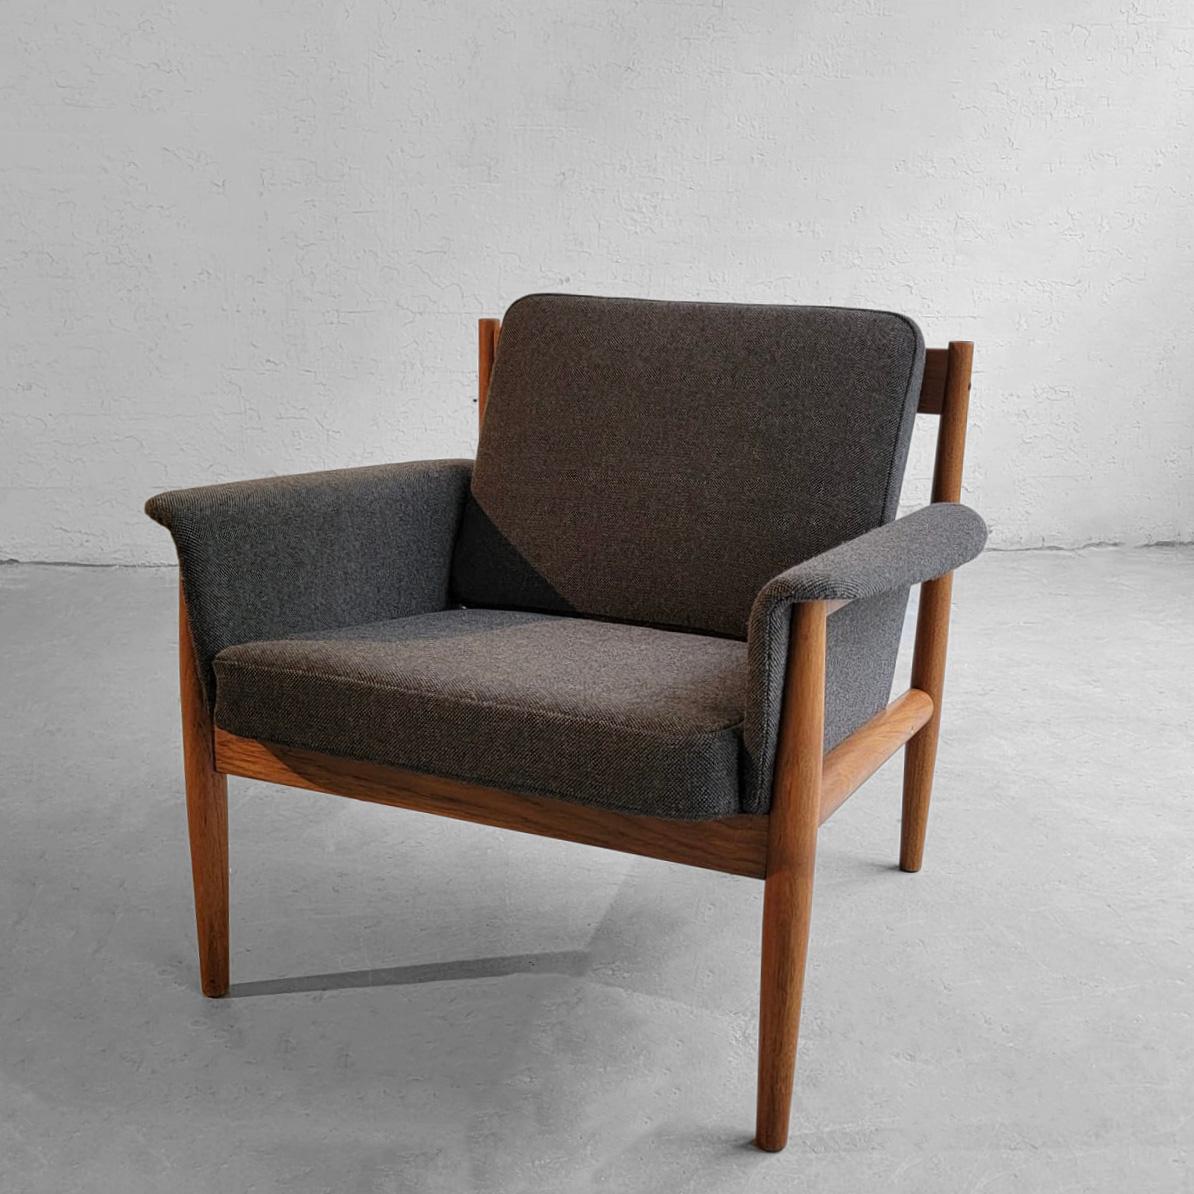 La chaise de salon moderne scandinave de Grete Jalk pour France & Son présente une structure en teck, une assise et un dossier rembourrés, des coussins amovibles et des bras recouverts de laine grise mélangée.